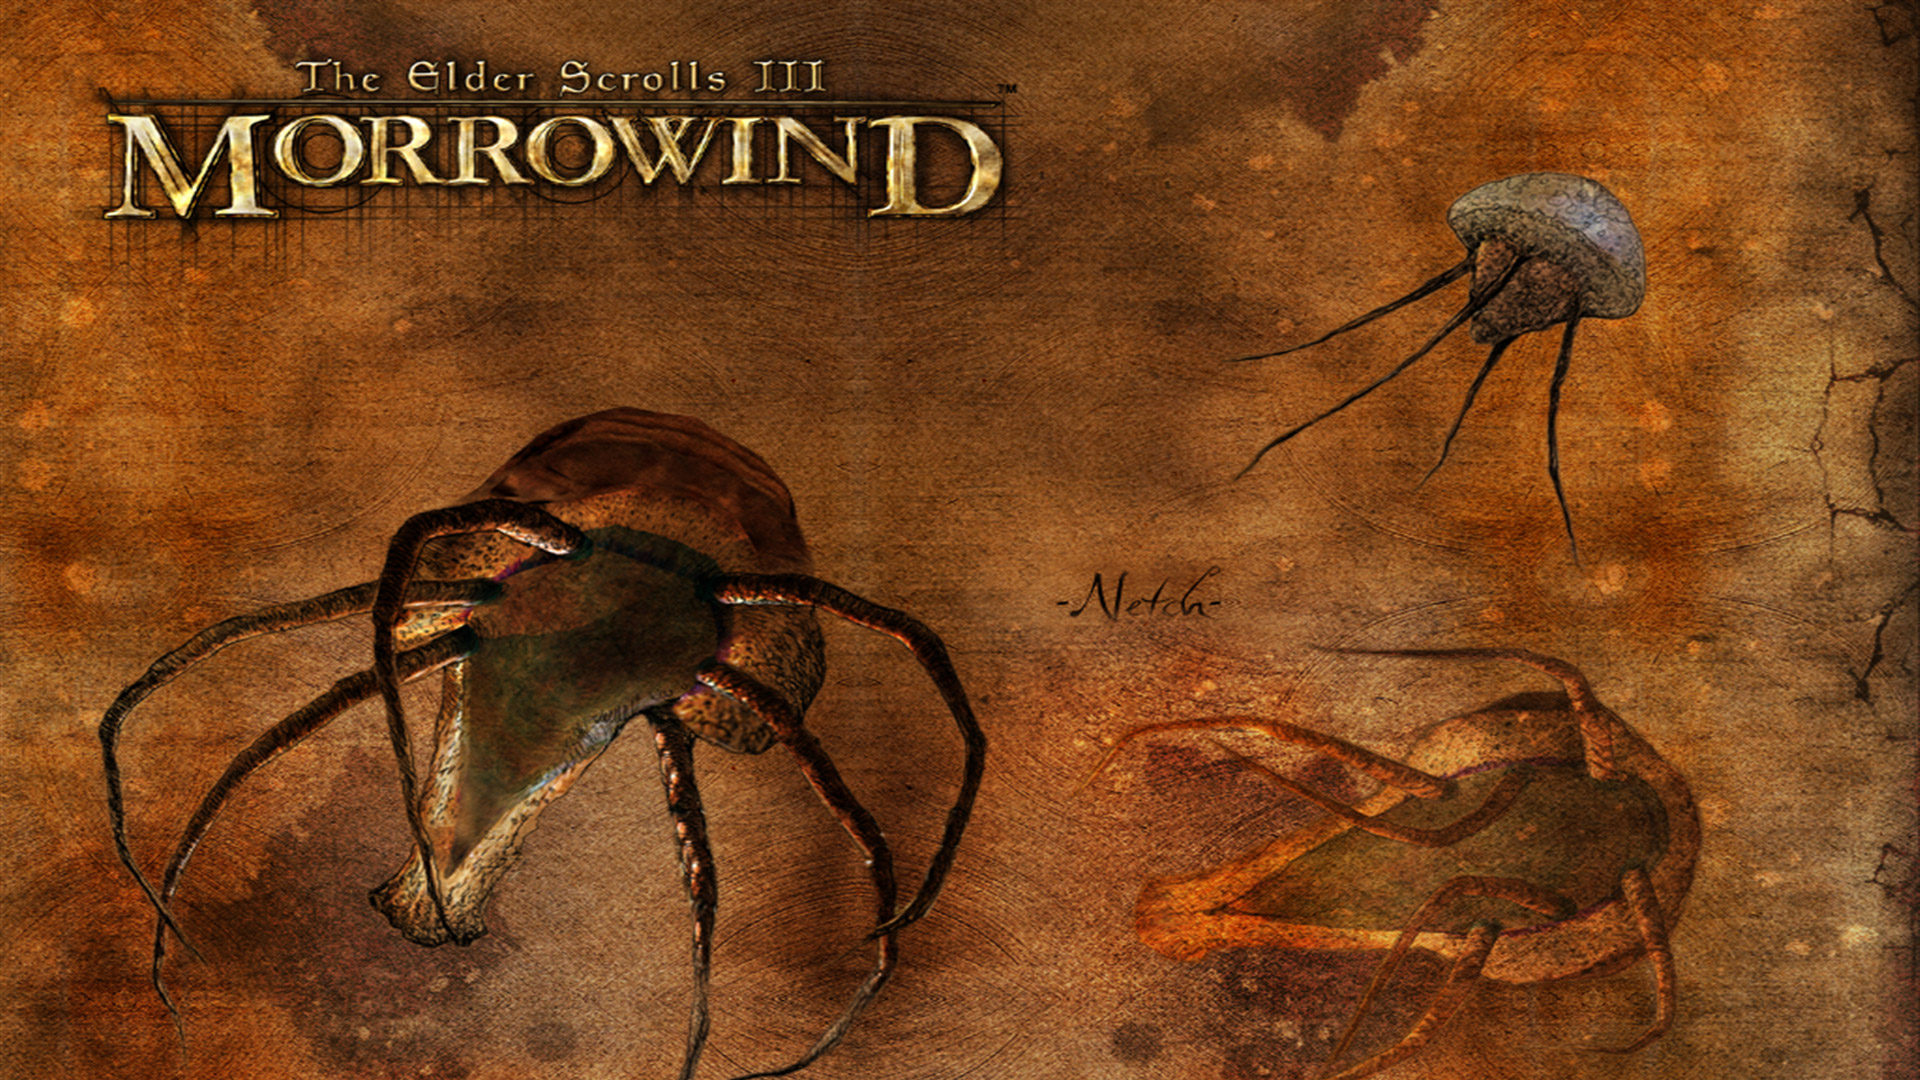 Morrowind , HD Wallpaper & Backgrounds